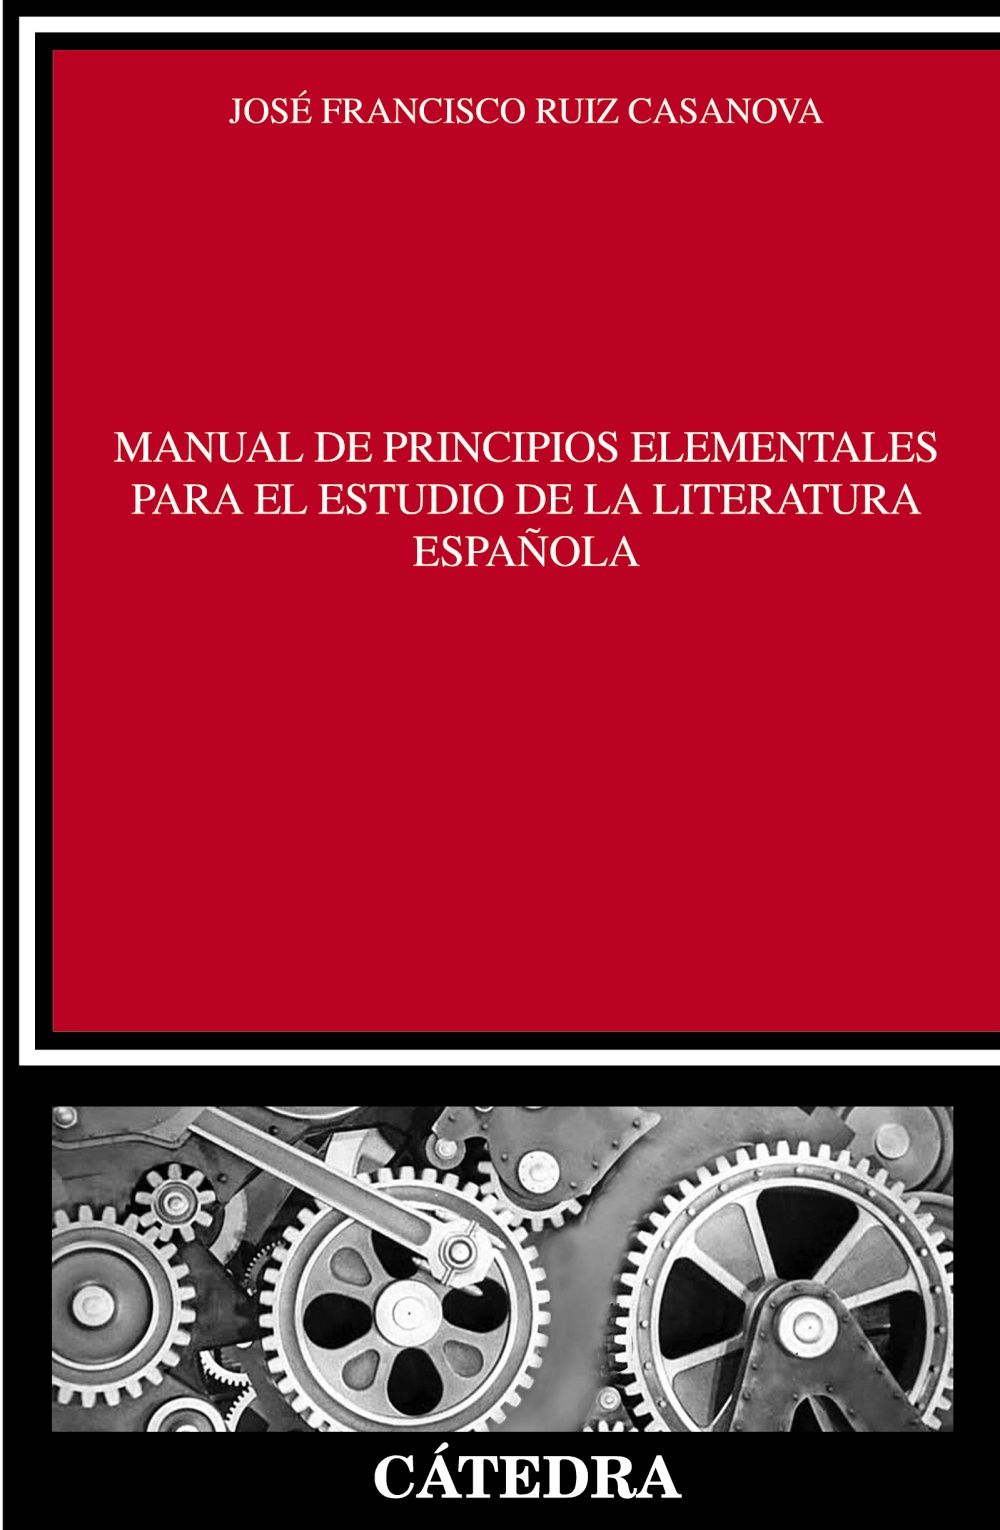 MANUAL DE PRINCIPIOS ELEMENTALES PARA EL ESTUDIO DE LA LITERATURA ESPAÑOLA. 